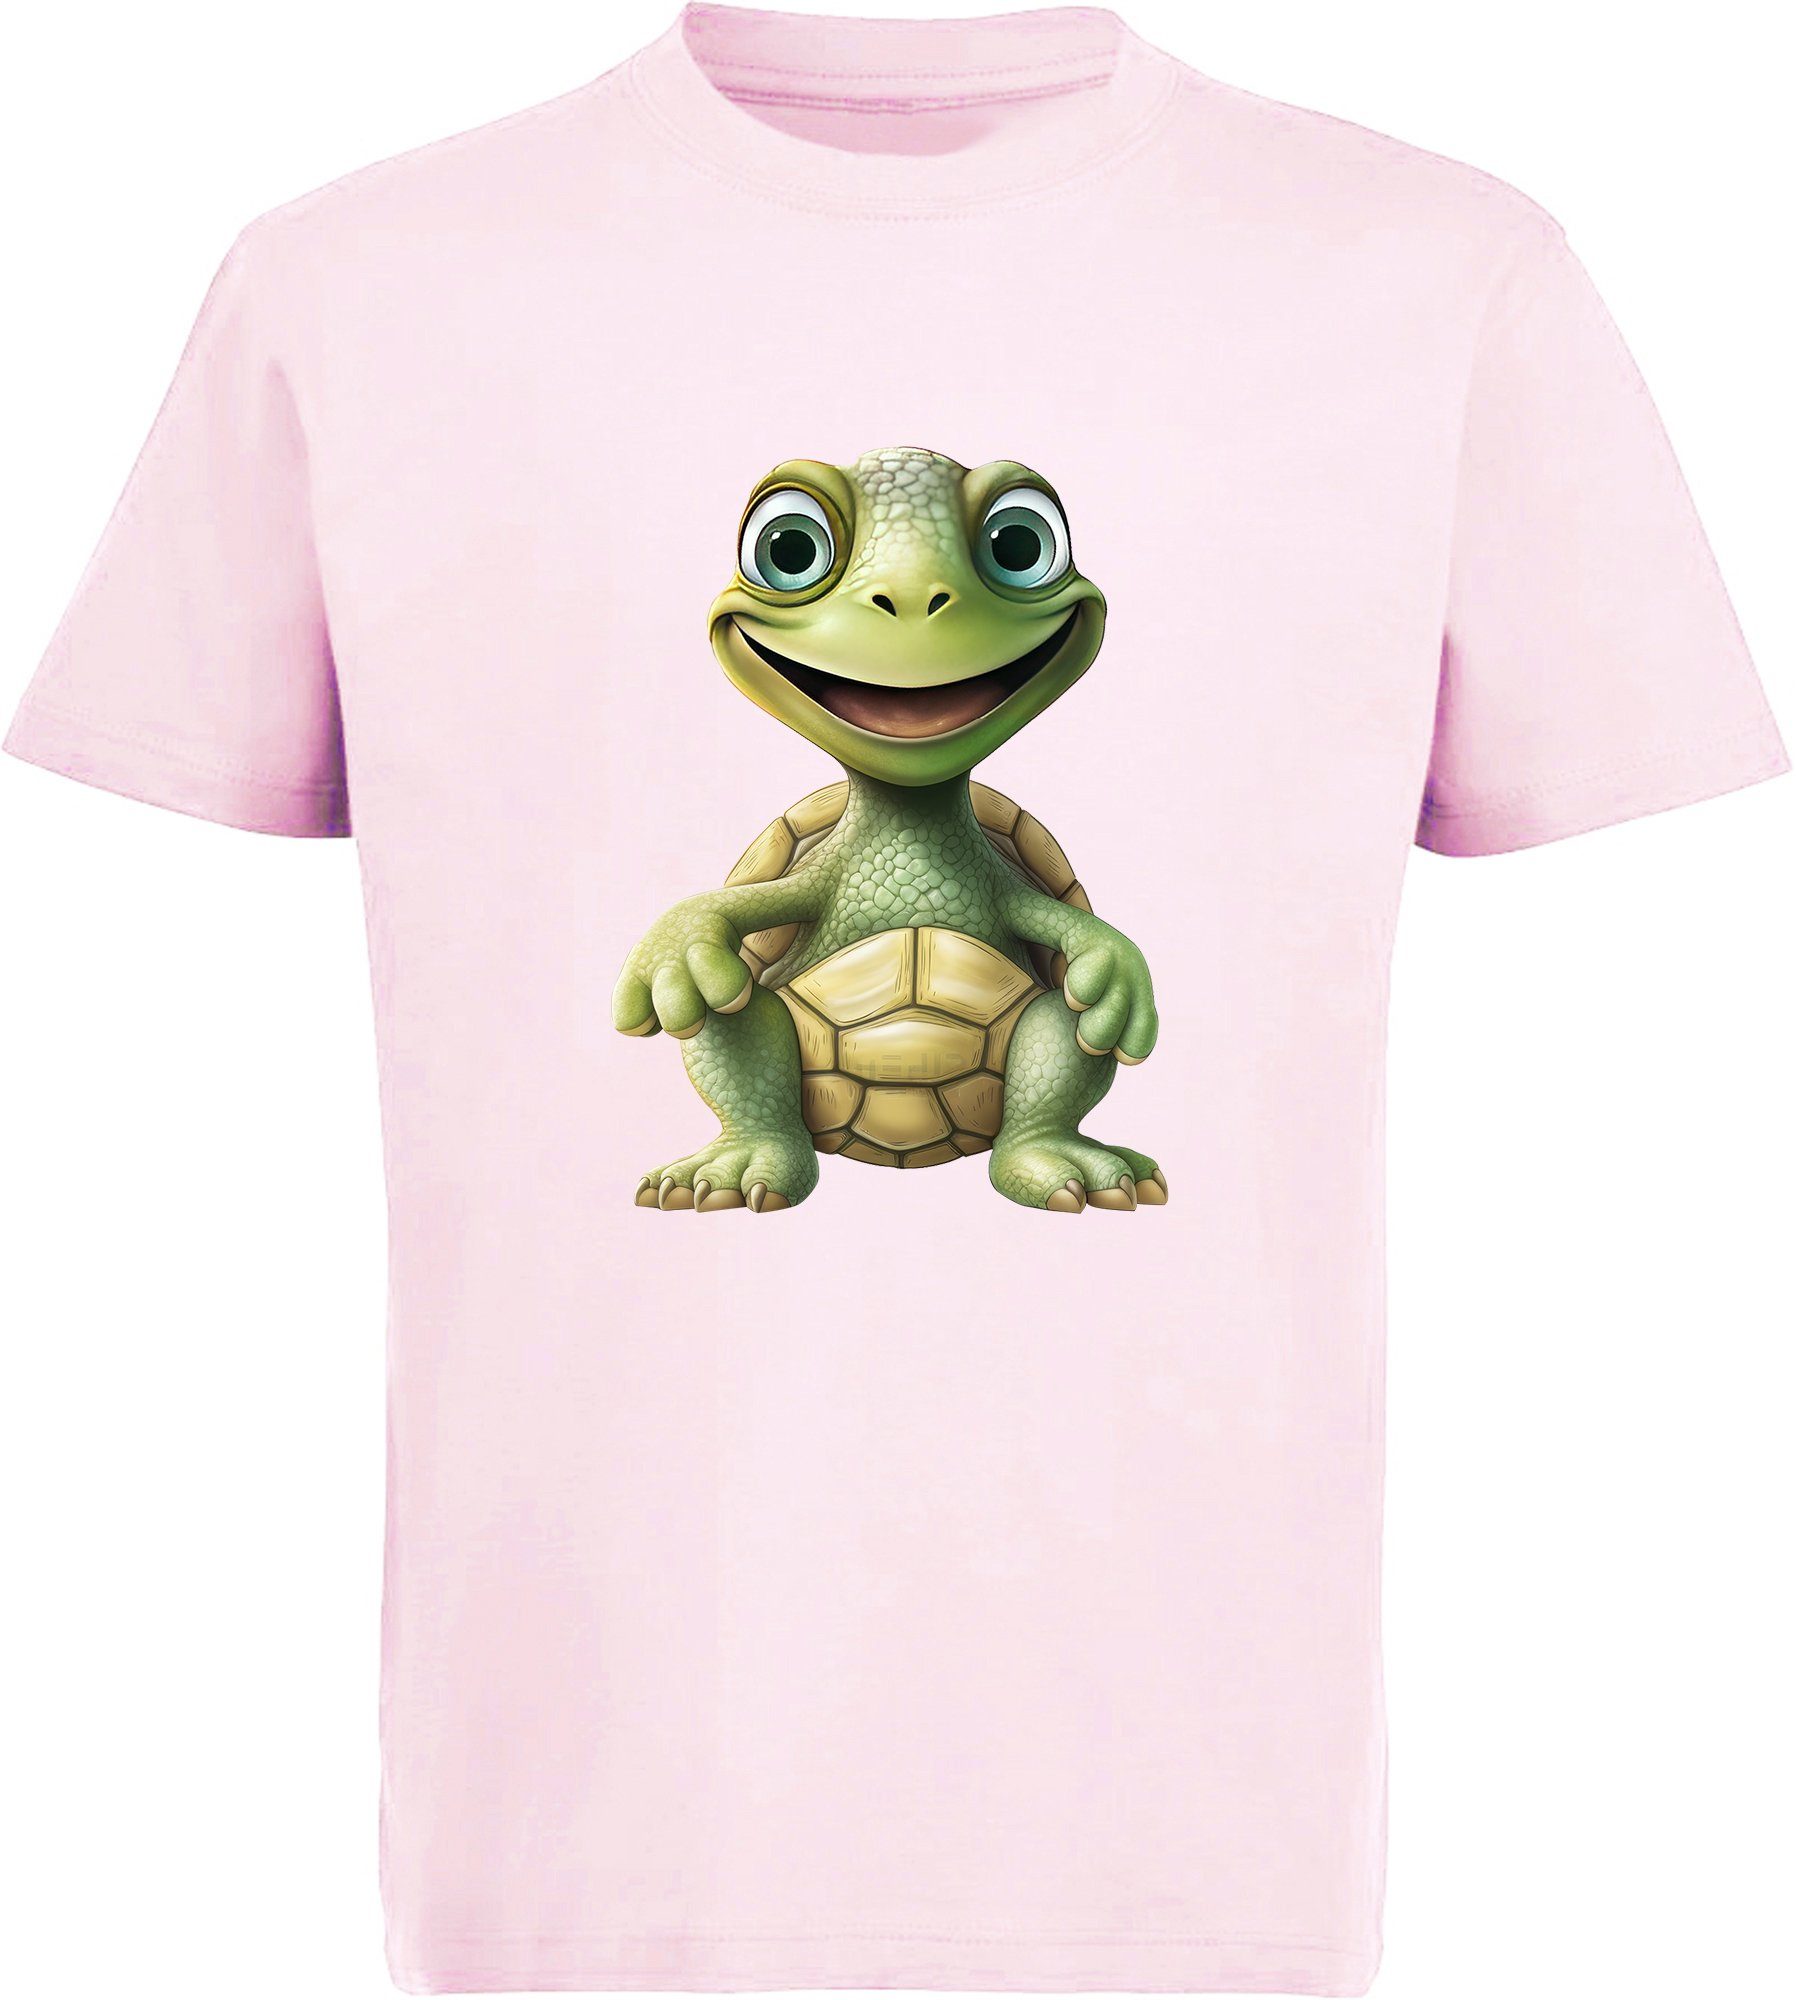 MyDesign24 T-Shirt Kinder Wildtier Print Shirt bedruckt - Baby Schildkröte Baumwollshirt mit Aufdruck, i279 rosa | T-Shirts